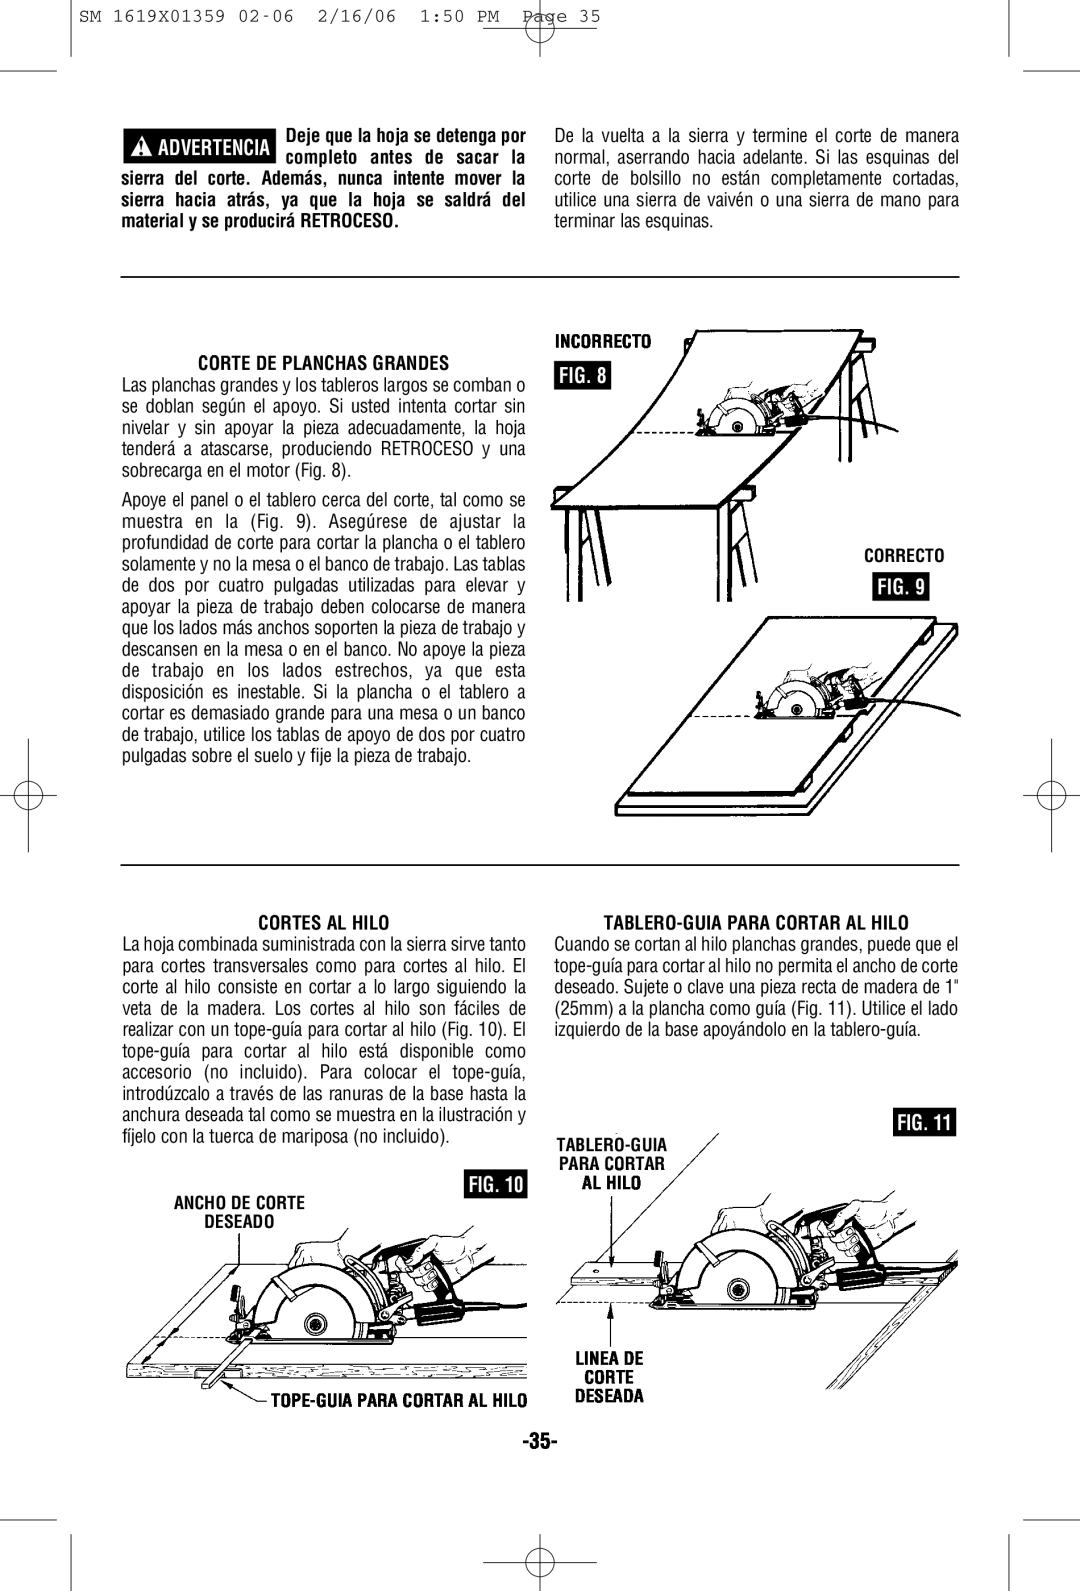 Skil HD5860 manual Corte De Planchas Grandes, Cortes Al Hilo, Tablero-Guiapara Cortar Al Hilo 